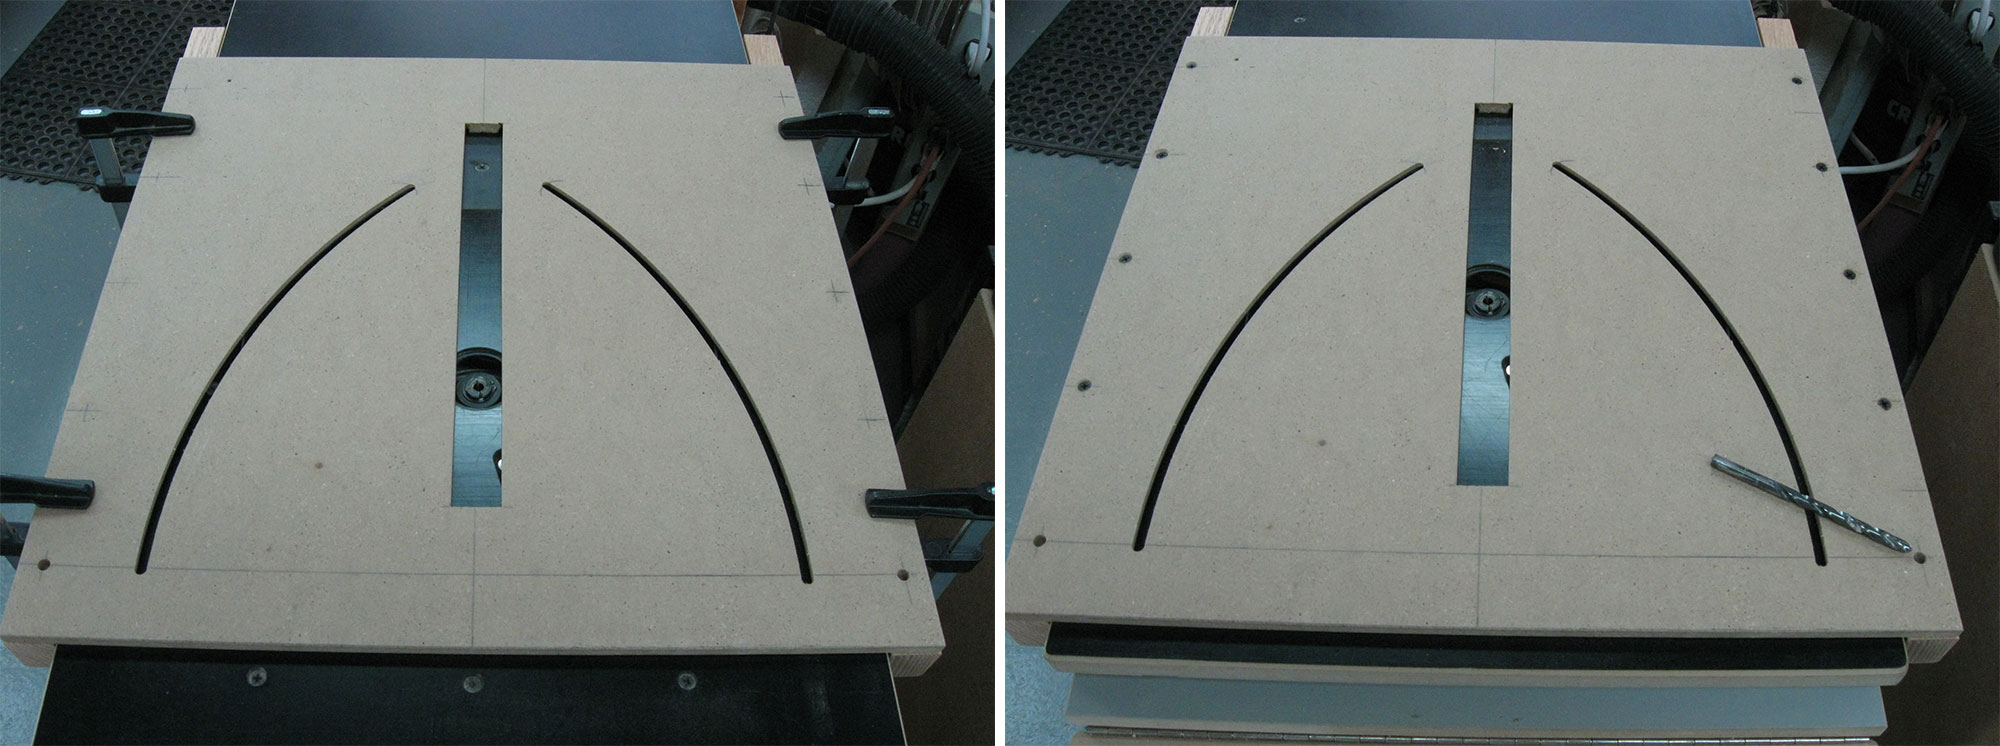 Image de gauche : Plateau de table à toupie utilisé pour positionner les tasseaux. Image de droite : Tasseaux fixés avec des vis.